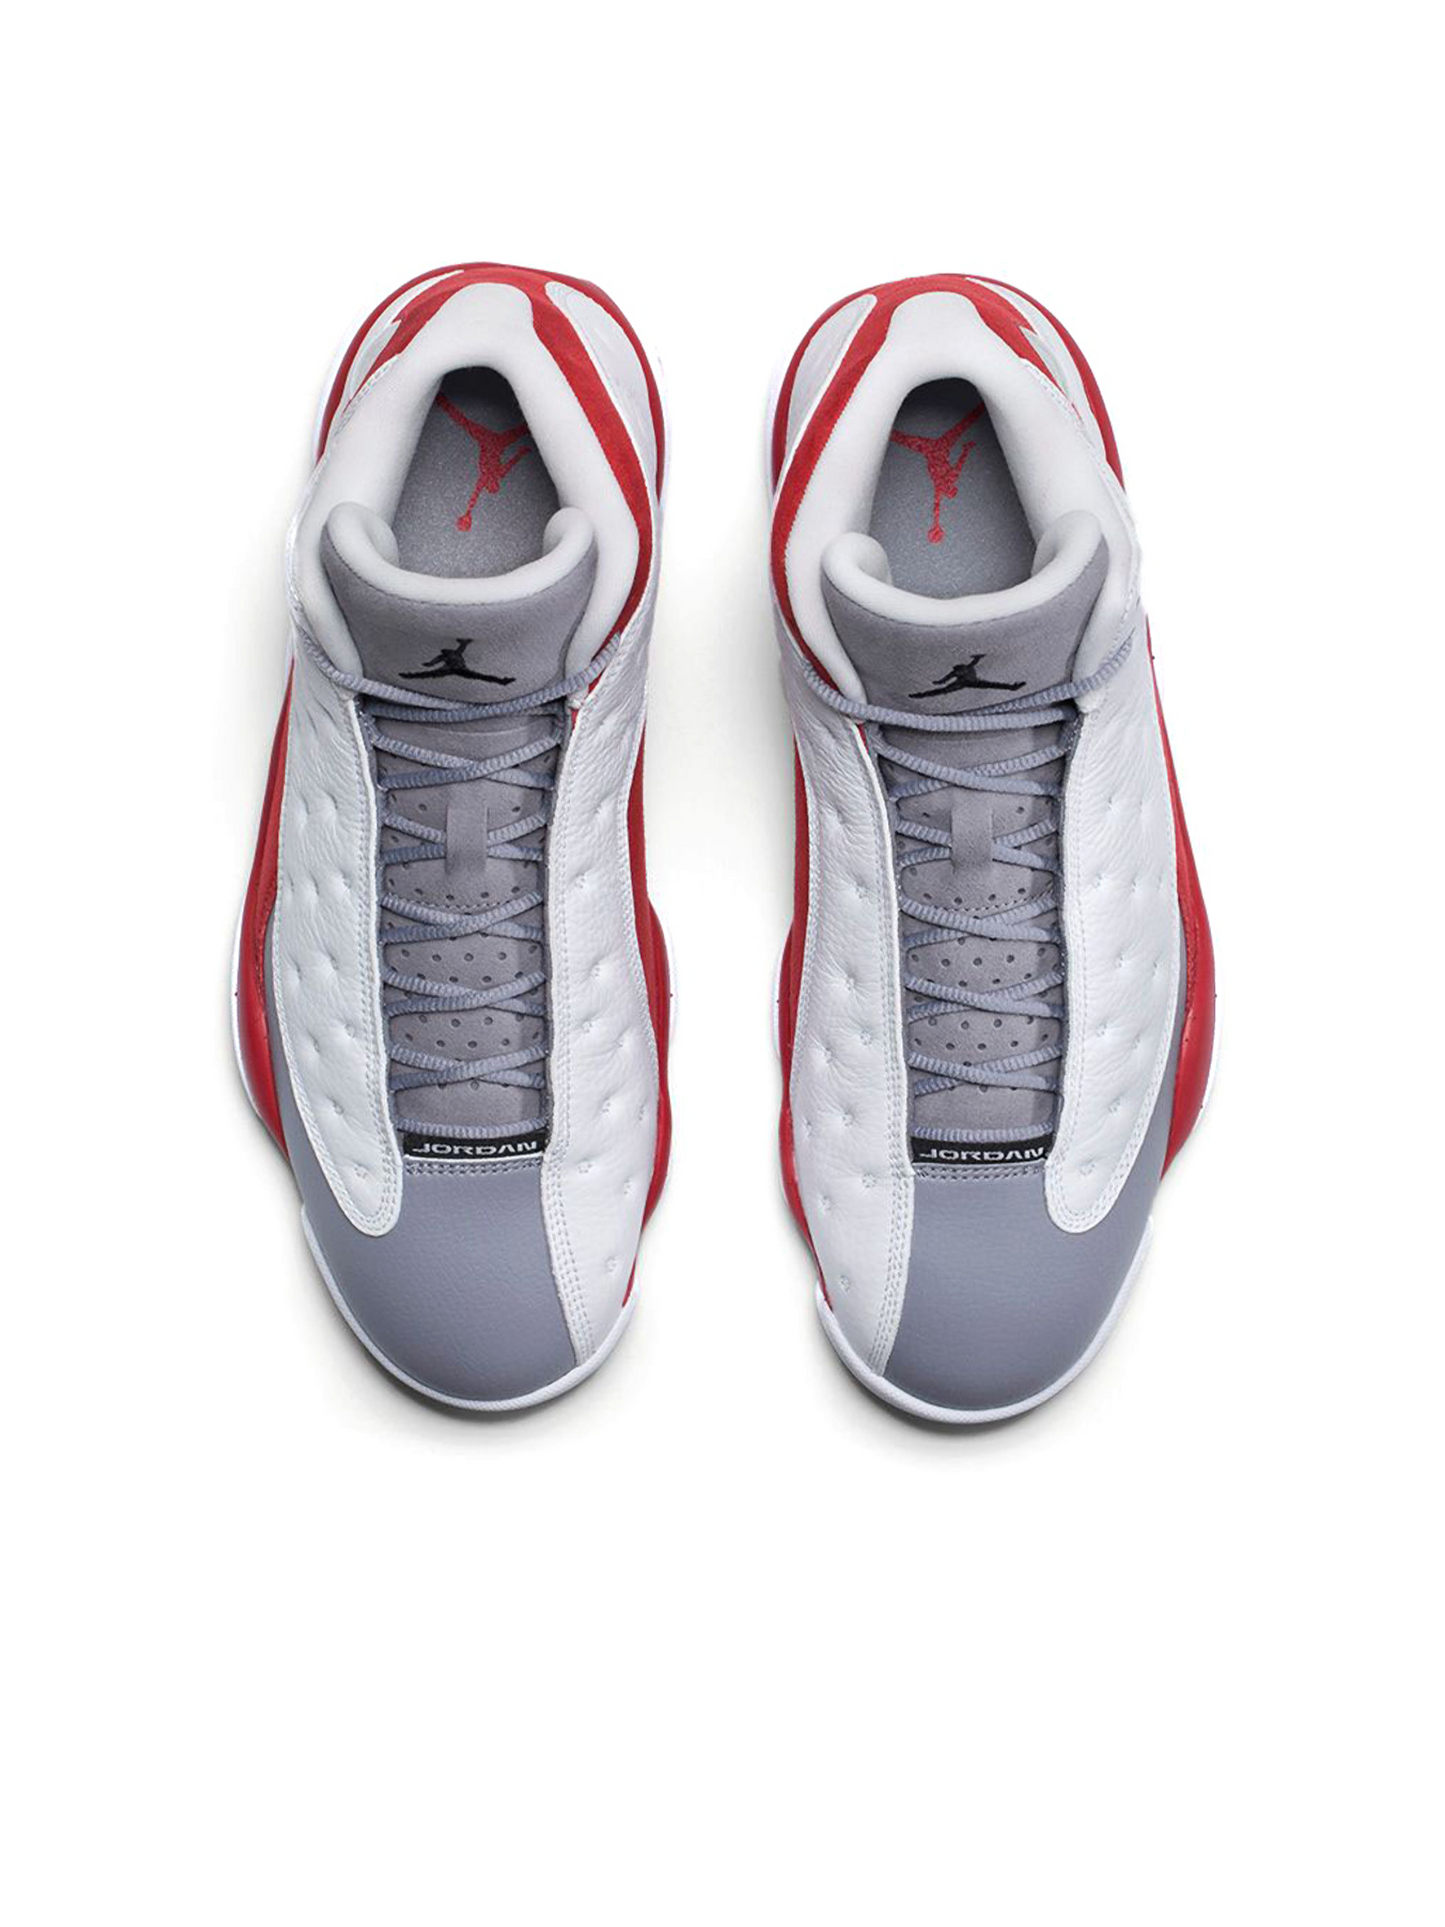 Air Jordan 13 Retro Grey Toe (2014) 414571-126